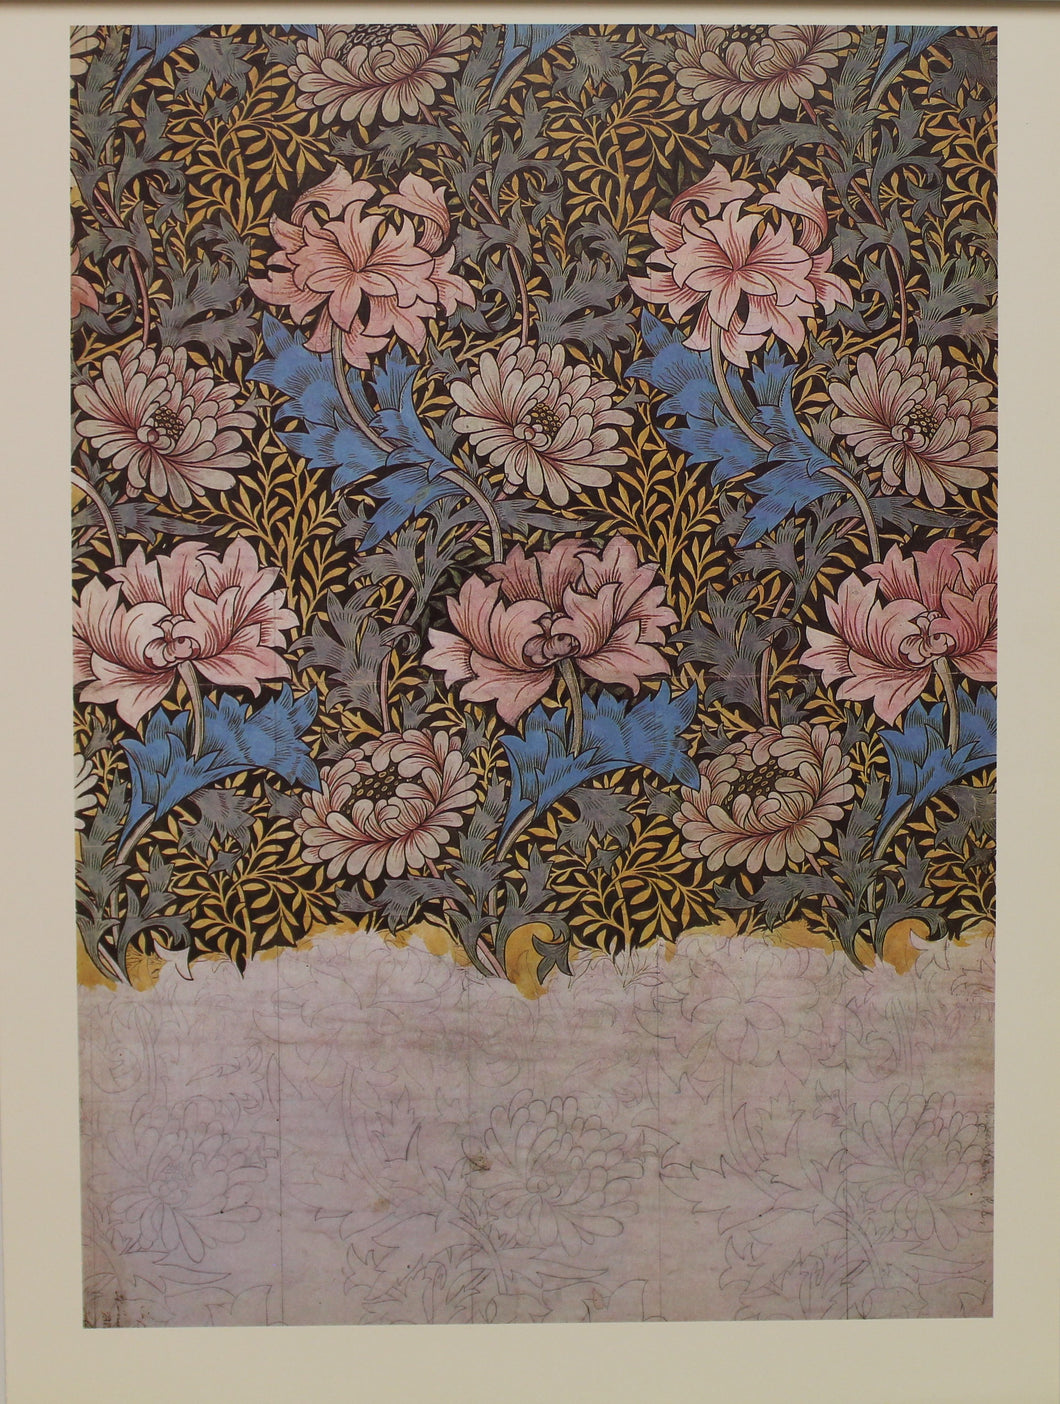 Decorator, Morris William, Wallpaper Design, Chrysanthemum, Plate 6, Art Nouveau, c1876